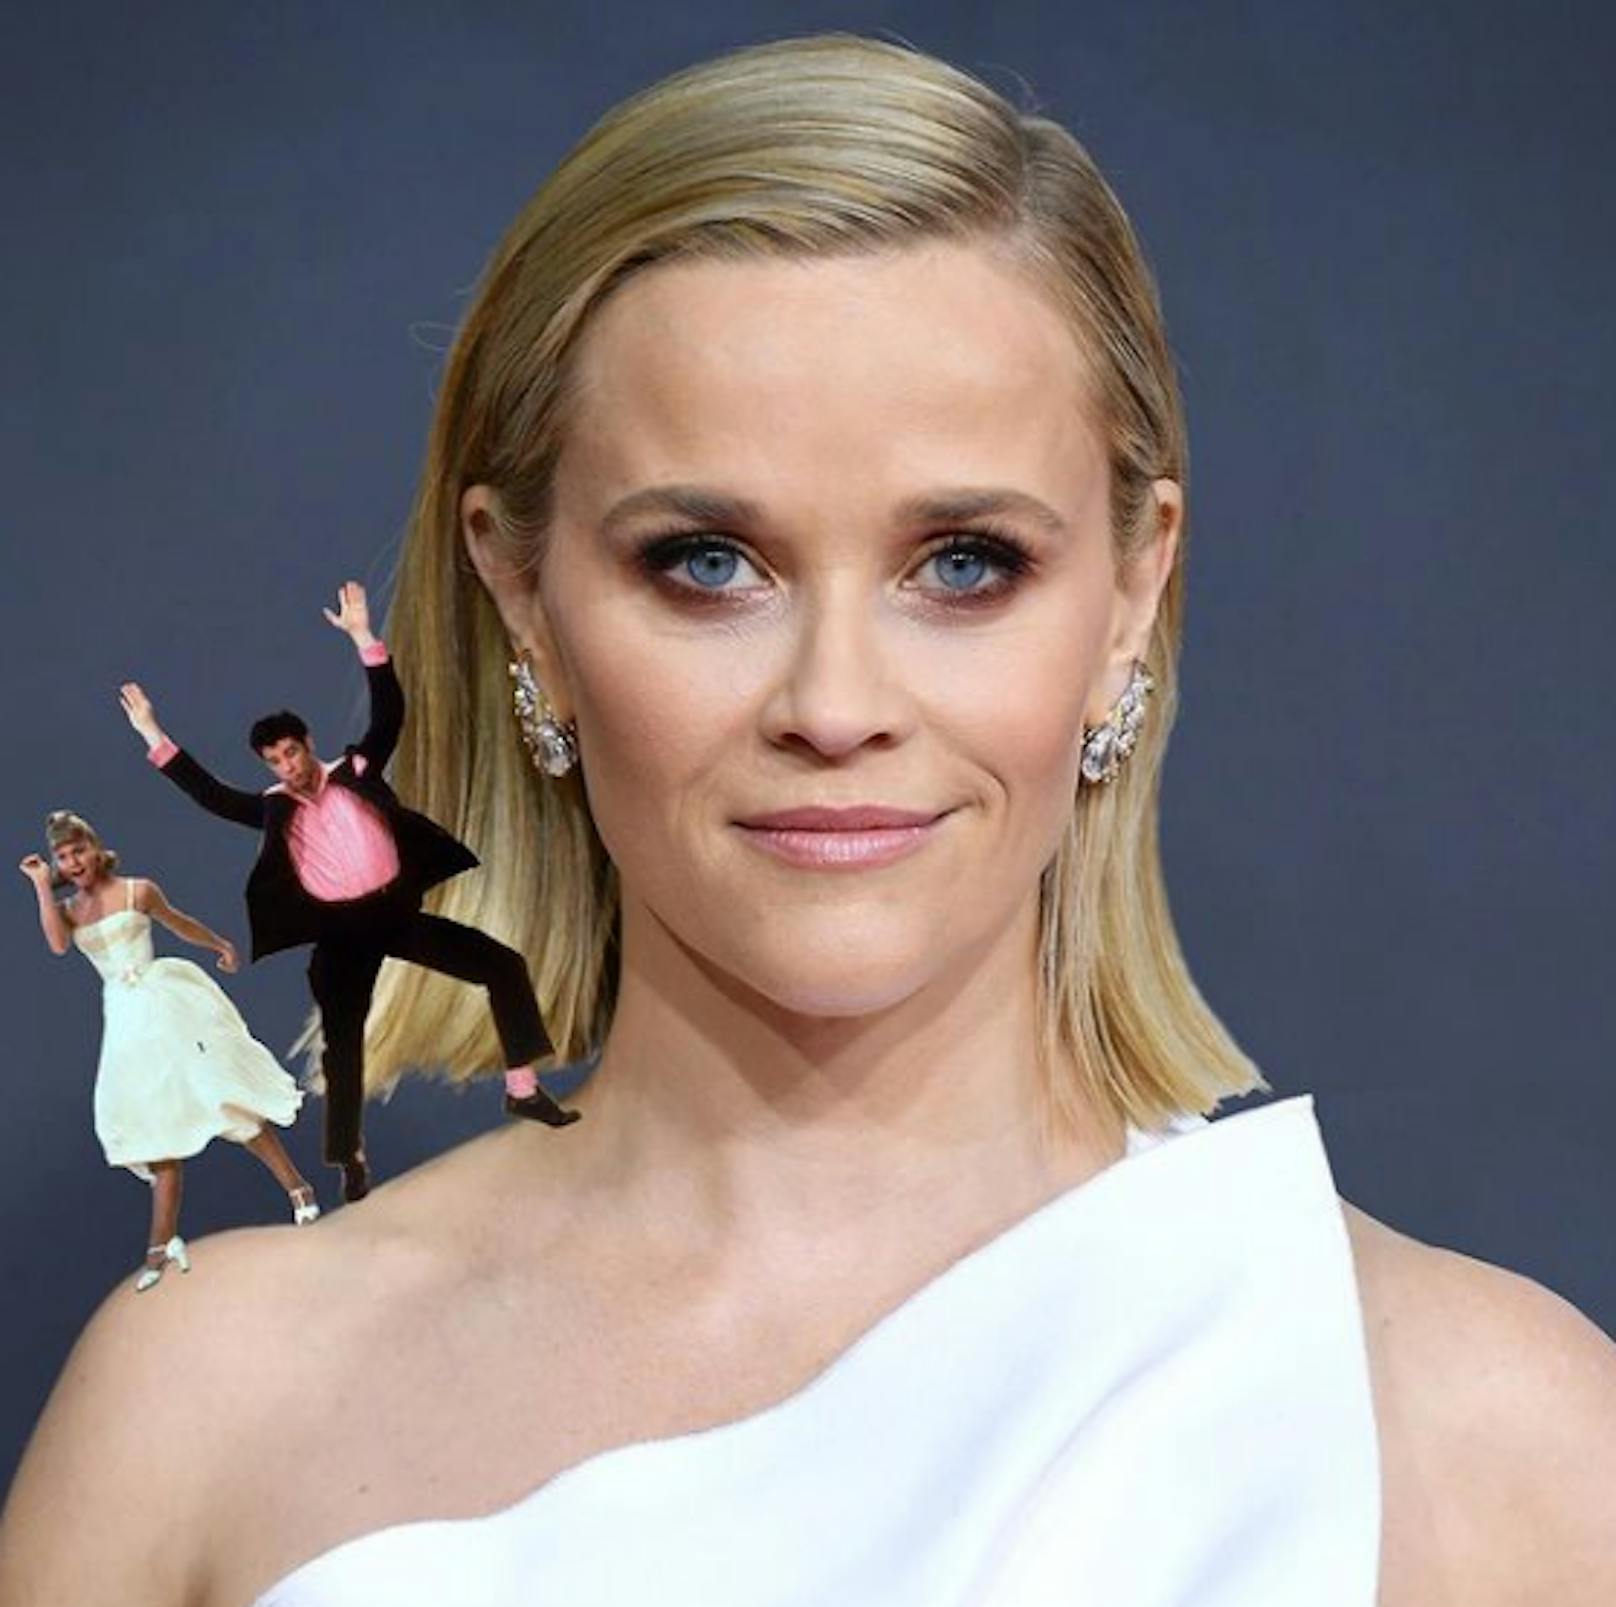 Hollywoodstars wie <strong>Reese Witherspoon</strong> haben eine eigene Advent-Instagram-Challenge ins Leben gerufen. Mittels Wortspielerei mit ihren Namen setzen sie sich Weihnachtselfen auf die Schulter: "Grease on Reese", heißt Witherspoons Foto,...<br>